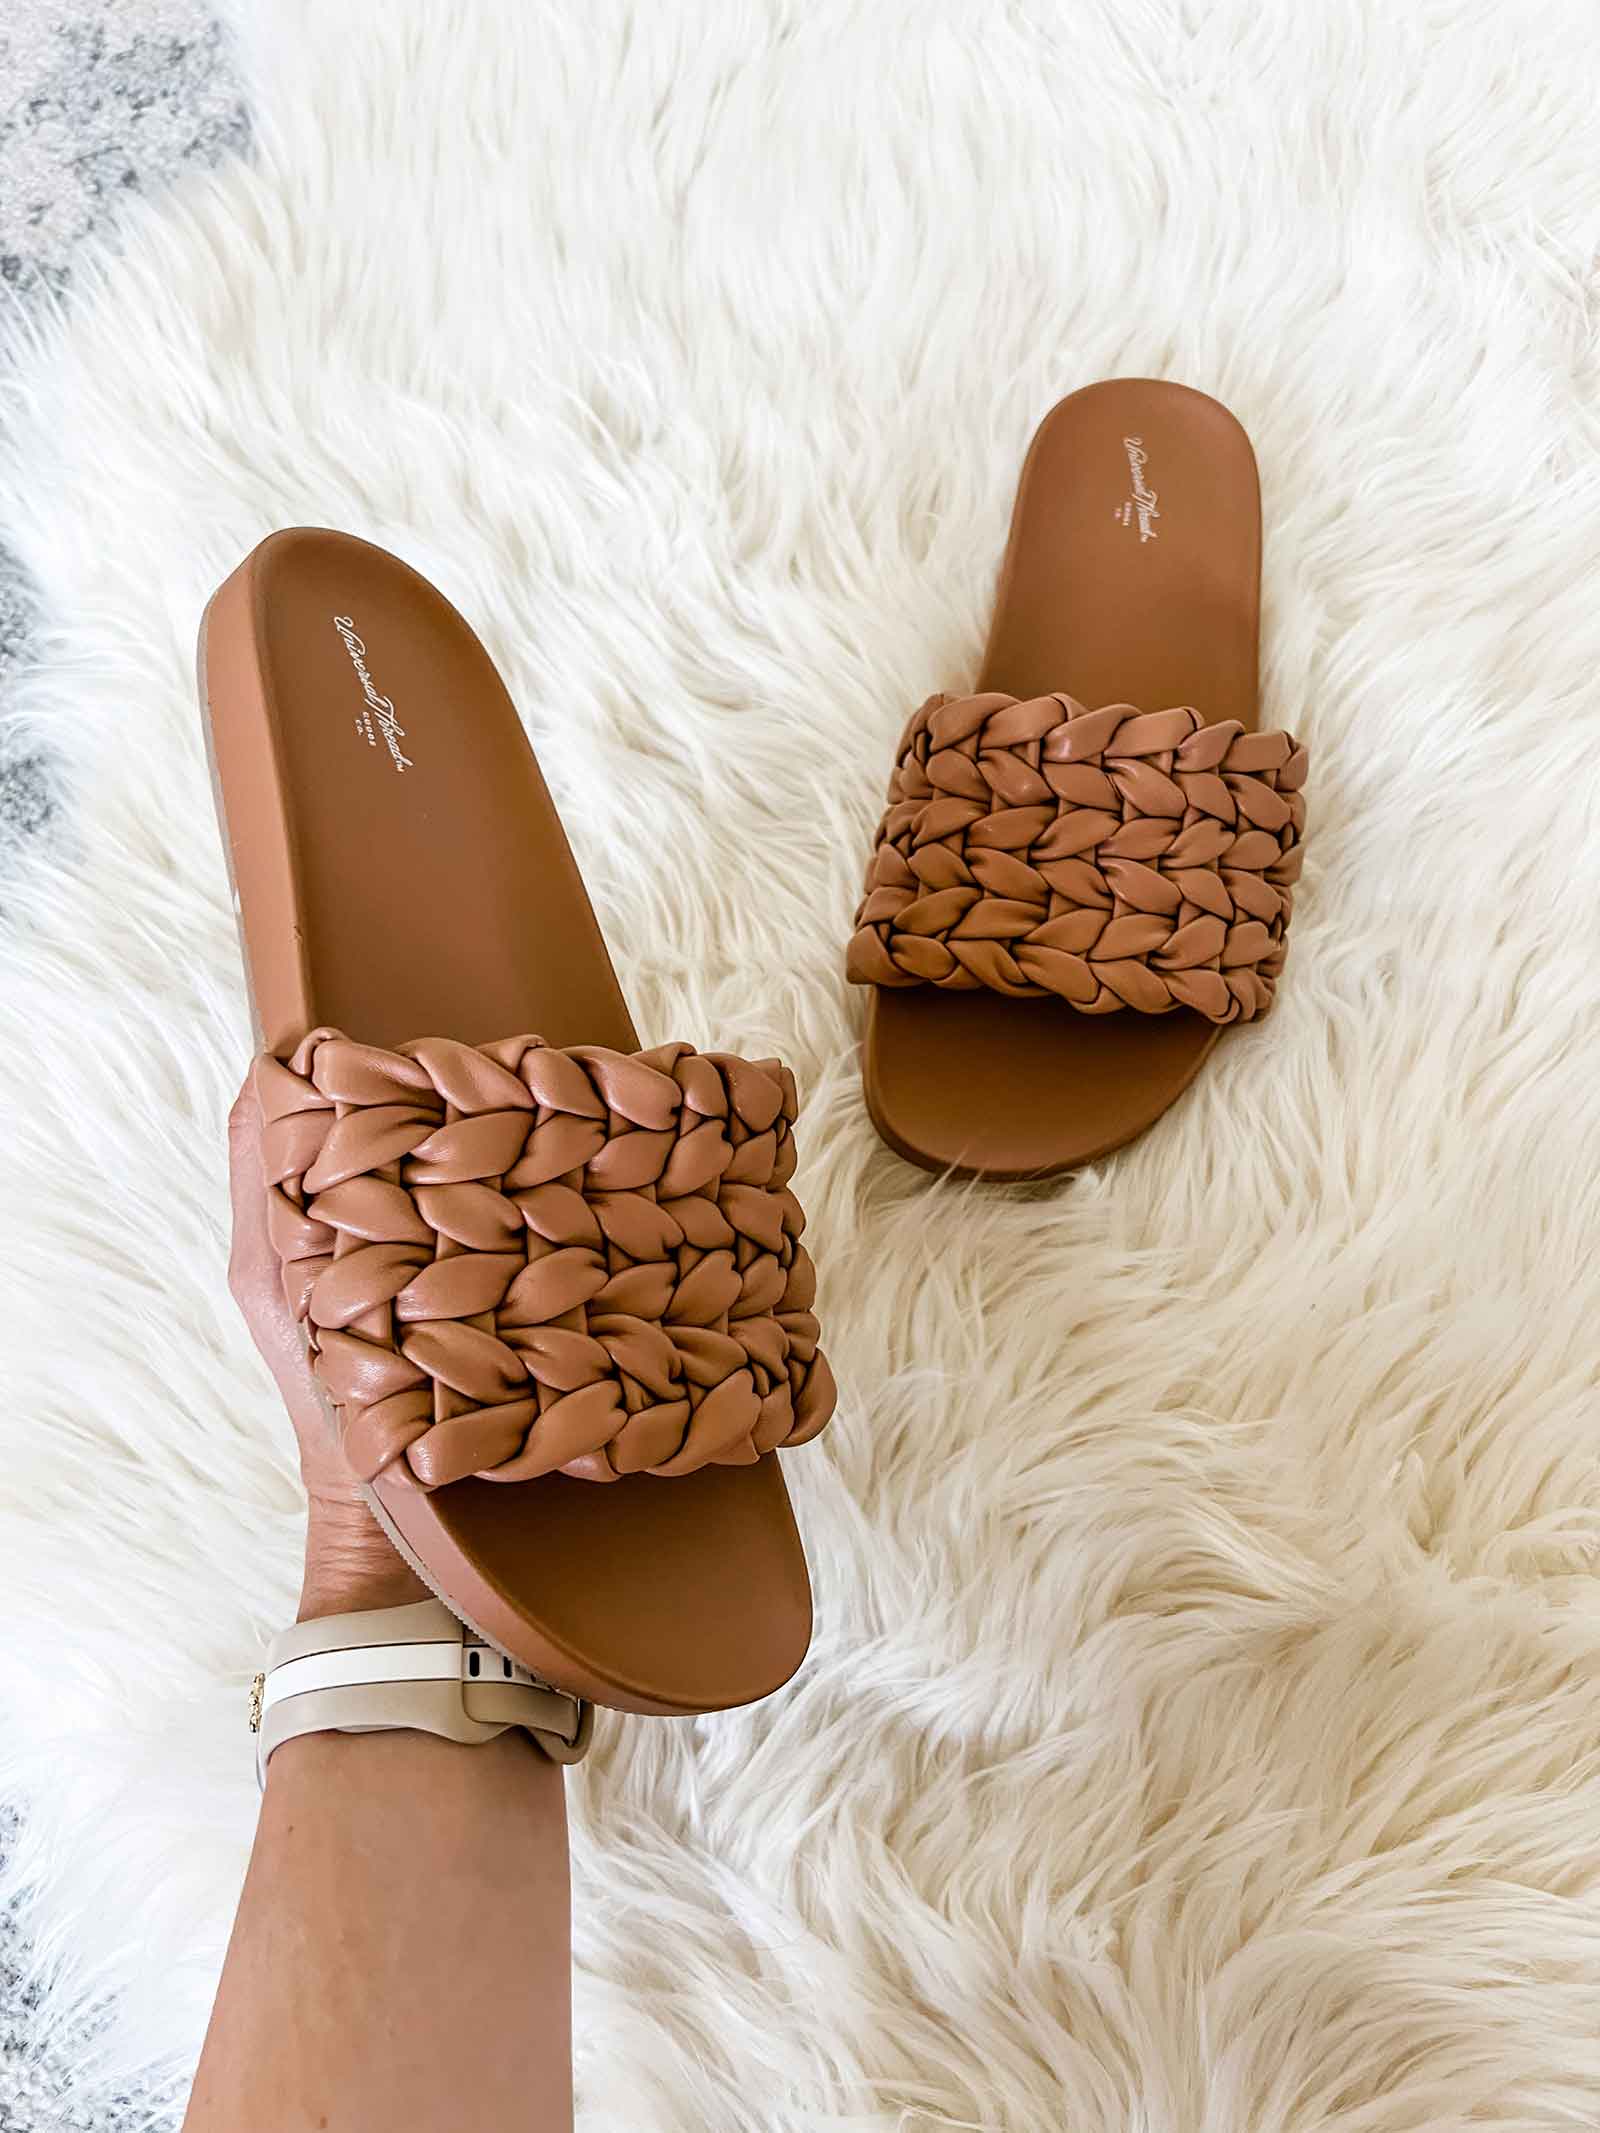 Target designer inspired sandals